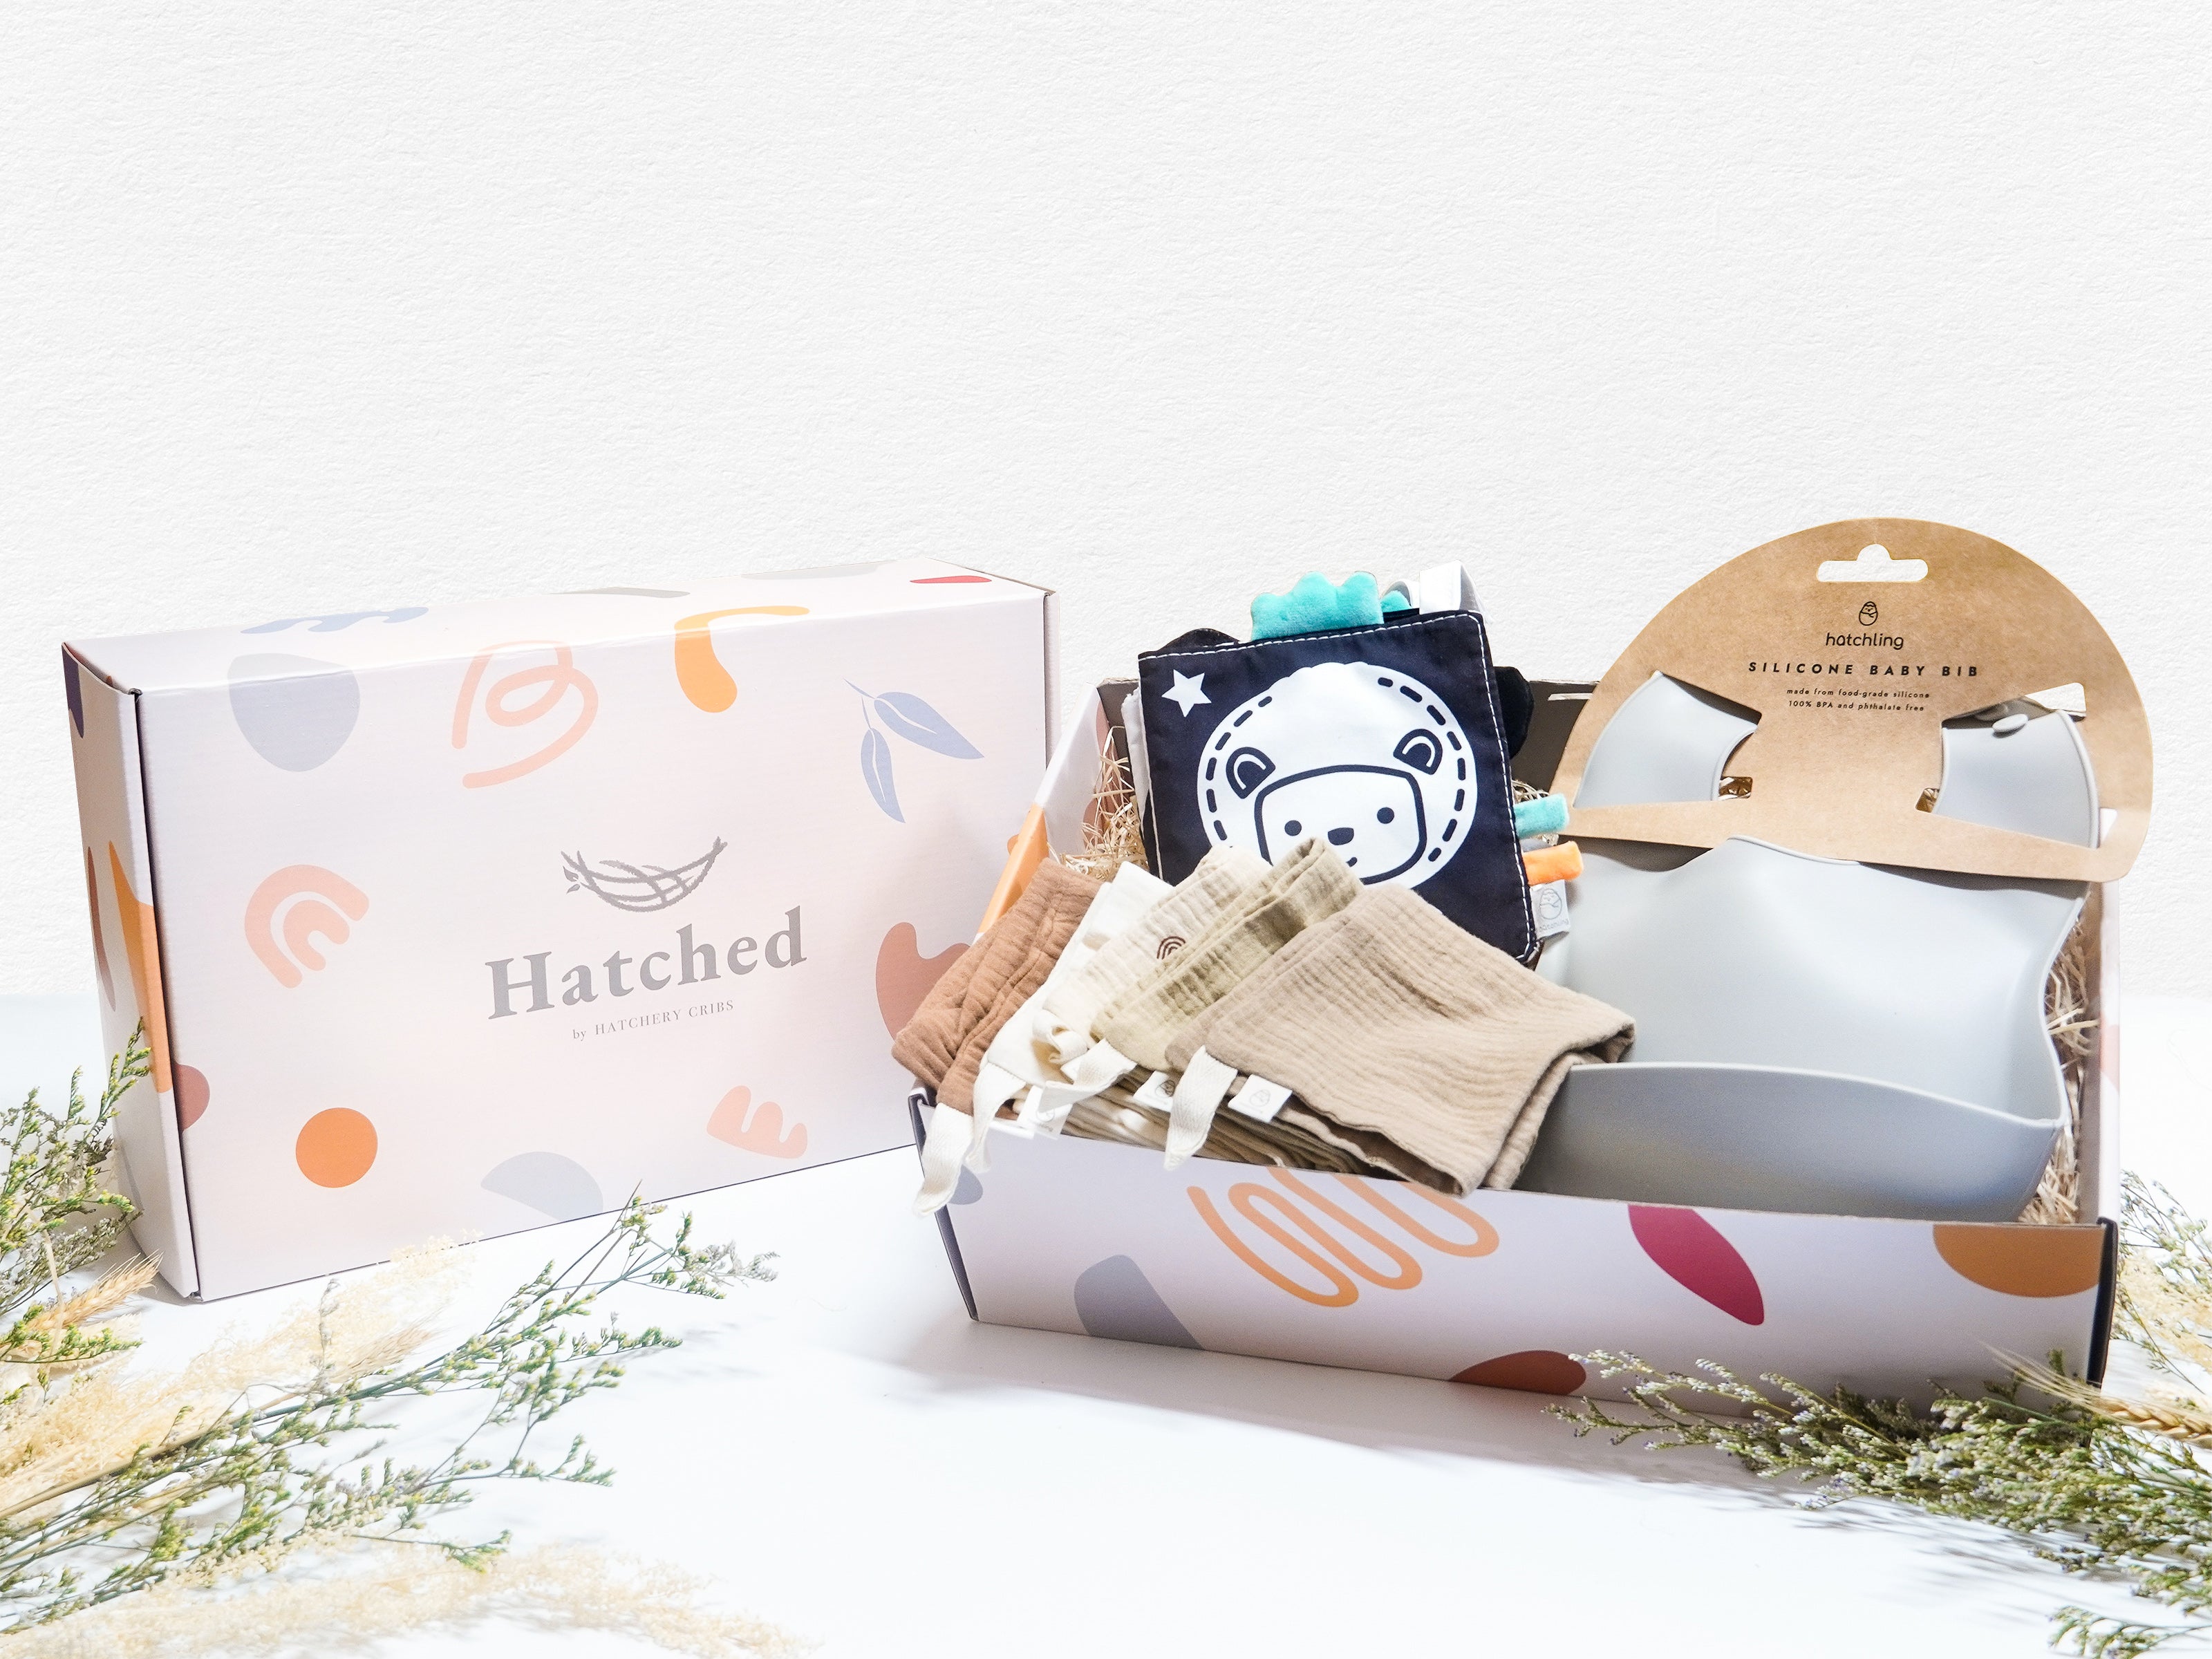 hatched bundle of joy gift set with box